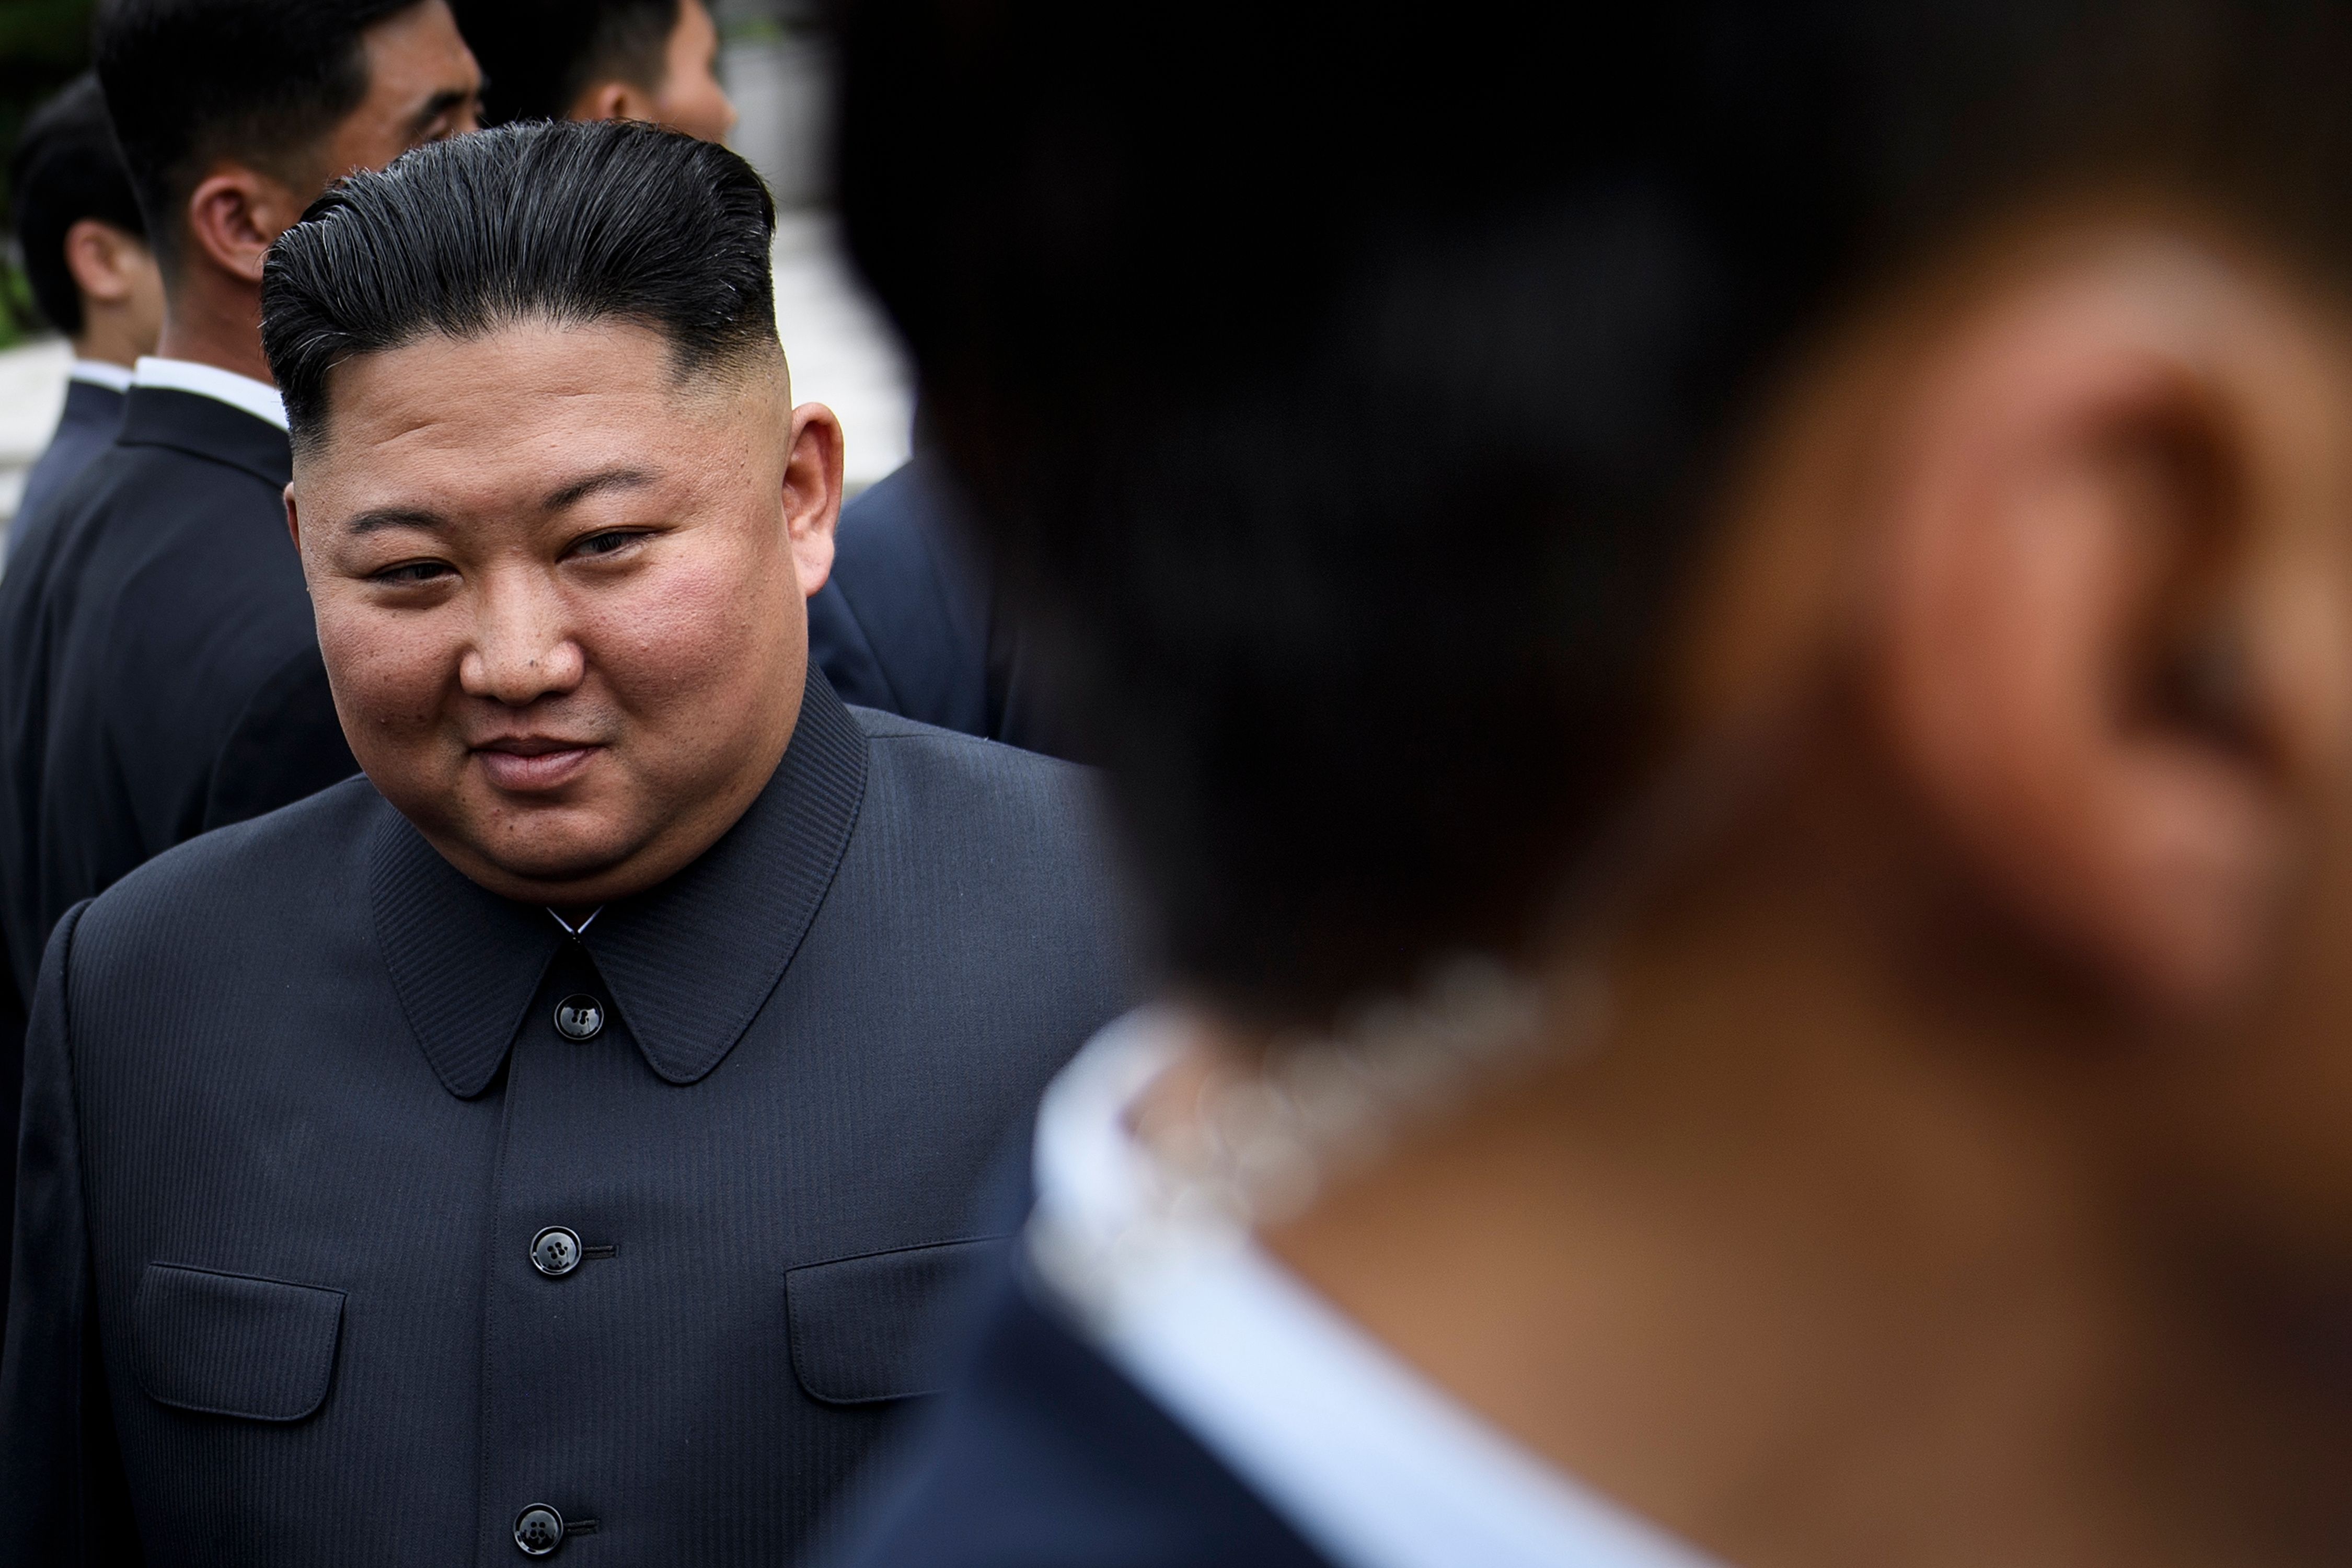 El líder norcoreano, Kim Jong-un no ha aparecido durante varios días, lo que ha provocado rumores, no confirmados, sobre una posible muerte. (Foto Prensa Libre: AFP)